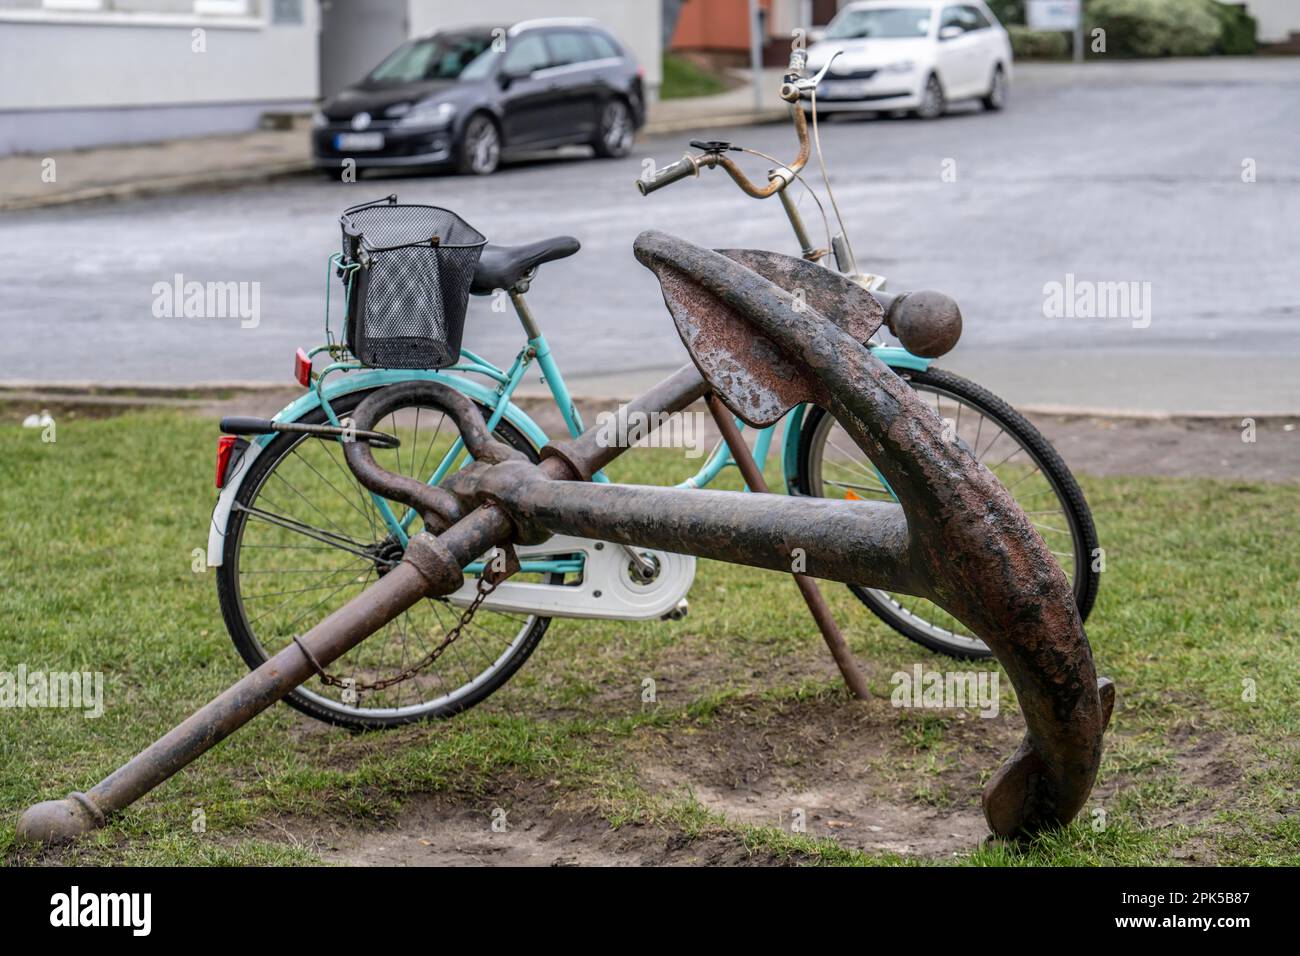 Vélo, vélo pour femmes, bien fixé avec un cadenas à vélo à l'ancre d'un navire de fer, à Bremerhaven, Brême, Allemagne. Banque D'Images